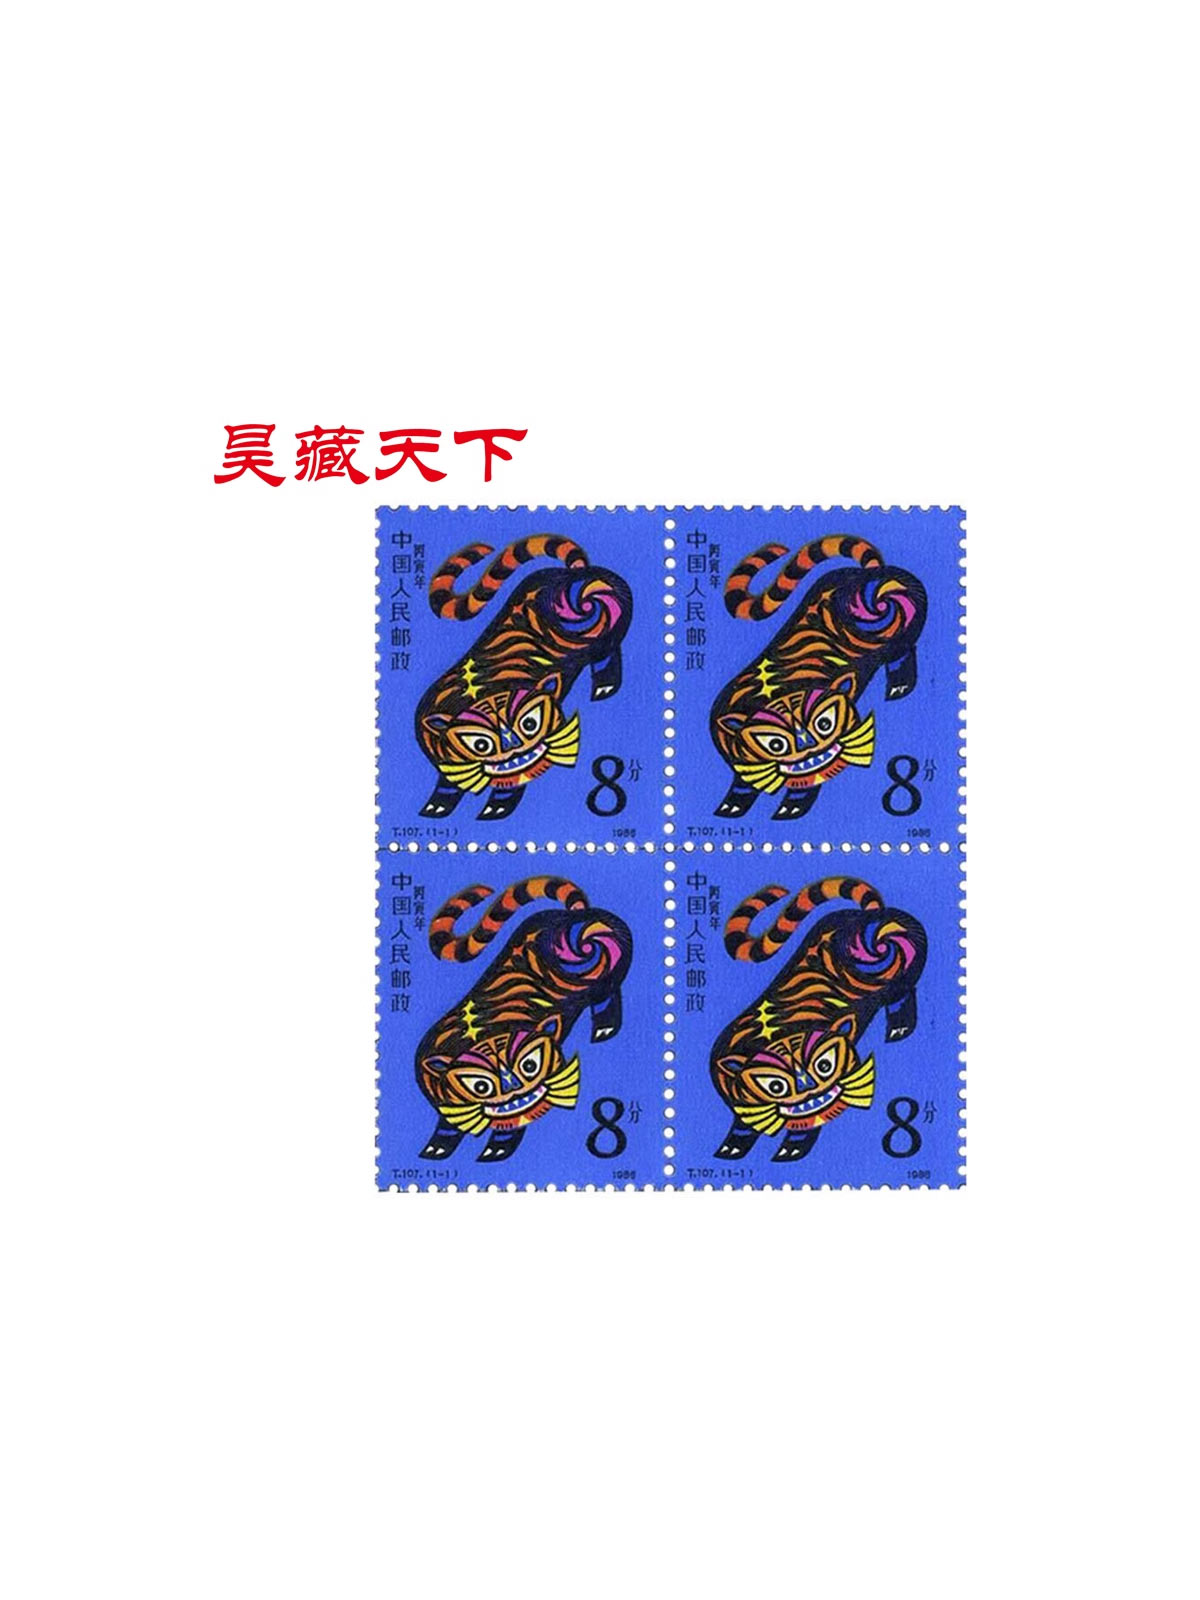 1986年生肖邮票